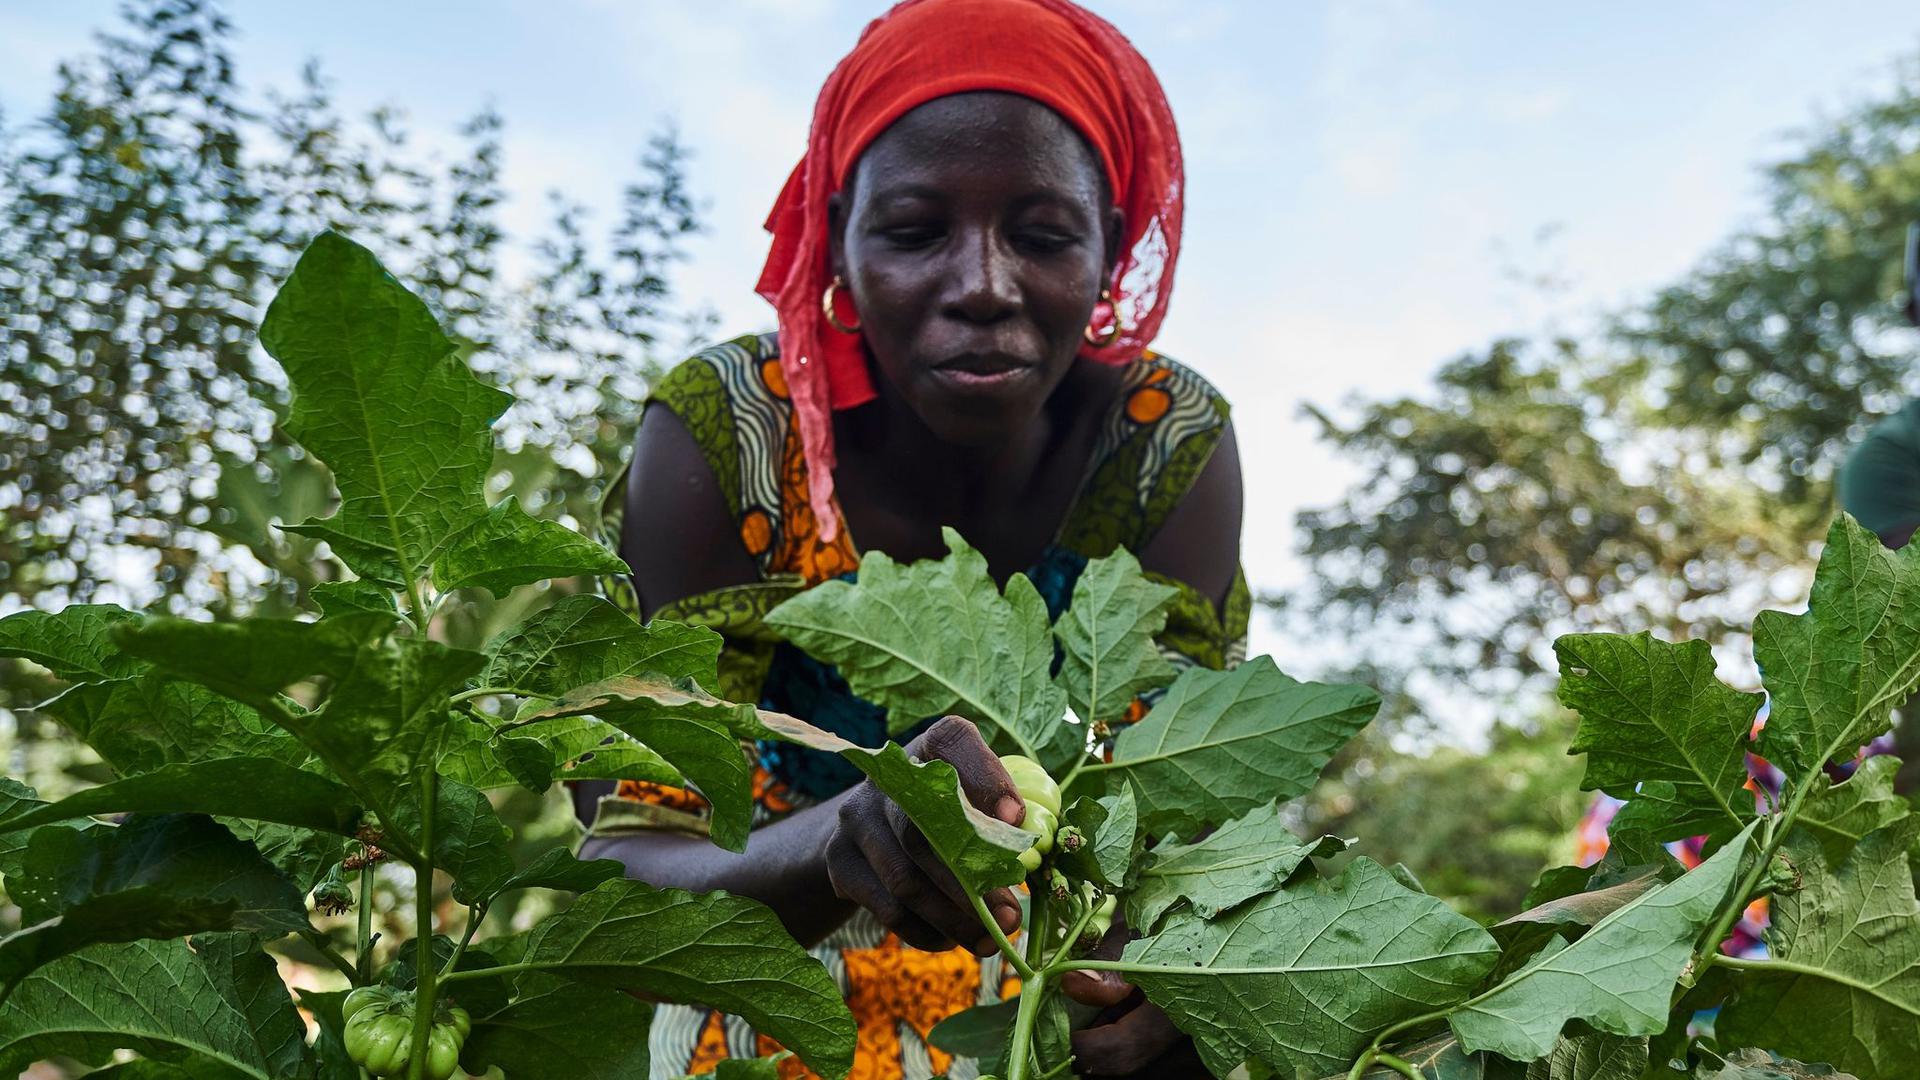 Eine Landwirtin arbeitet auf dem Feld im Rahmen eines Waldgartenprojekts von Trees for the Future in Kaffrine (Senegal).